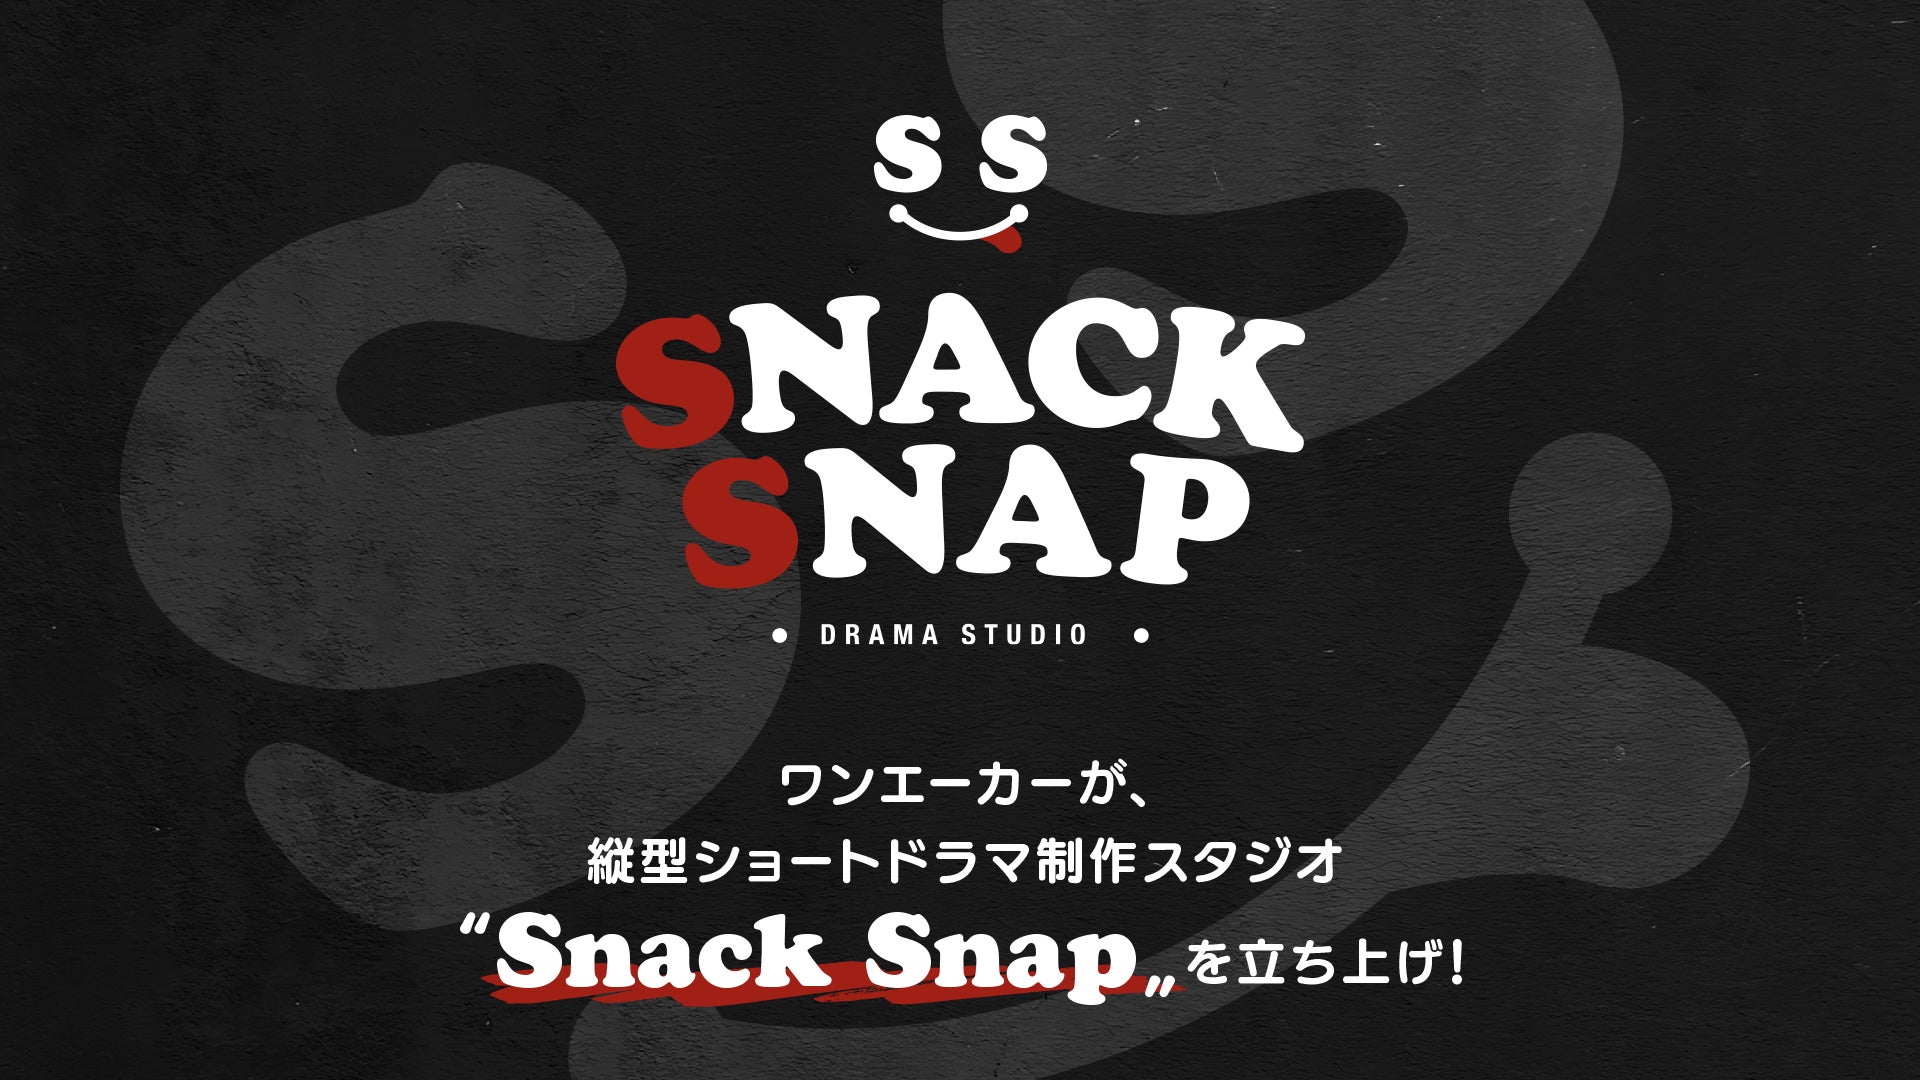 数々の縦ショートドラマ×広告でヒットを生み出してきたワンエーカーが、縦型ショートドラマ制作スタジオ「Snack Snap」を立ち上げ